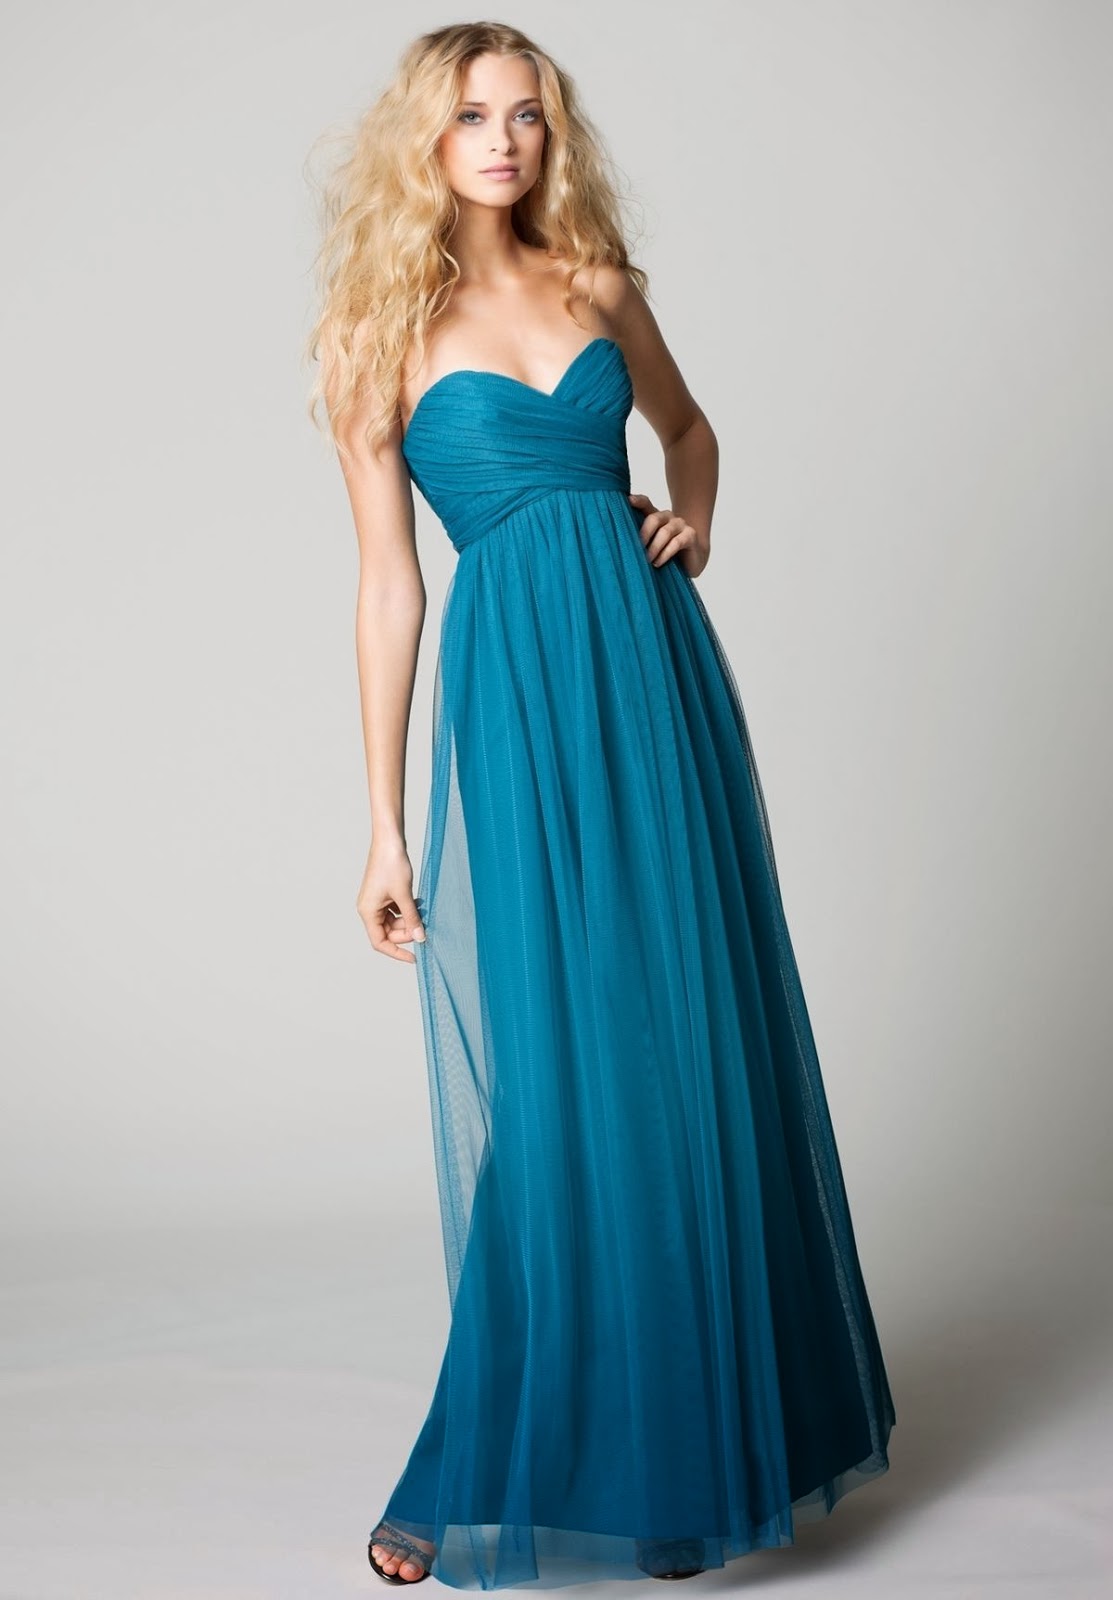 WhiteAzalea Simple Dresses: Blue Bridesmaid Dresses Simple and Elegant